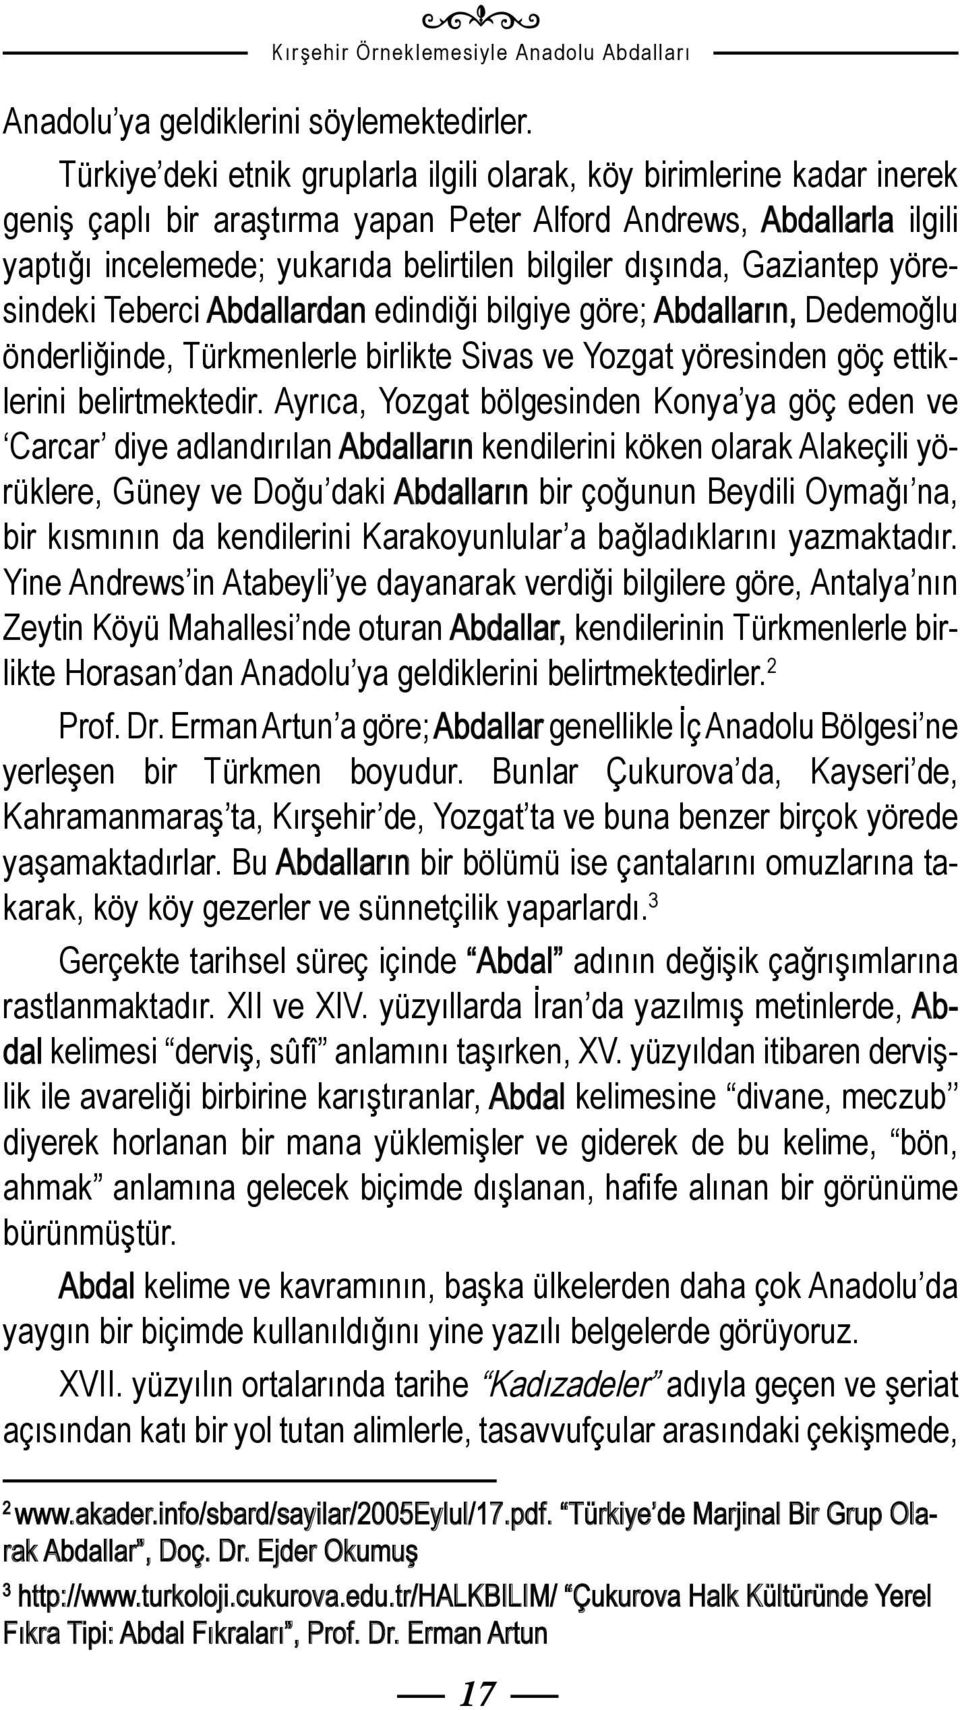 dışında, Gaziantep yöresindeki Teberci Abdallardan edindiği bilgiye göre; Abdalların, Dedemoğlu önderliğinde, Türkmenlerle birlikte Sivas ve Yozgat yöresinden göç ettiklerini belirtmektedir.